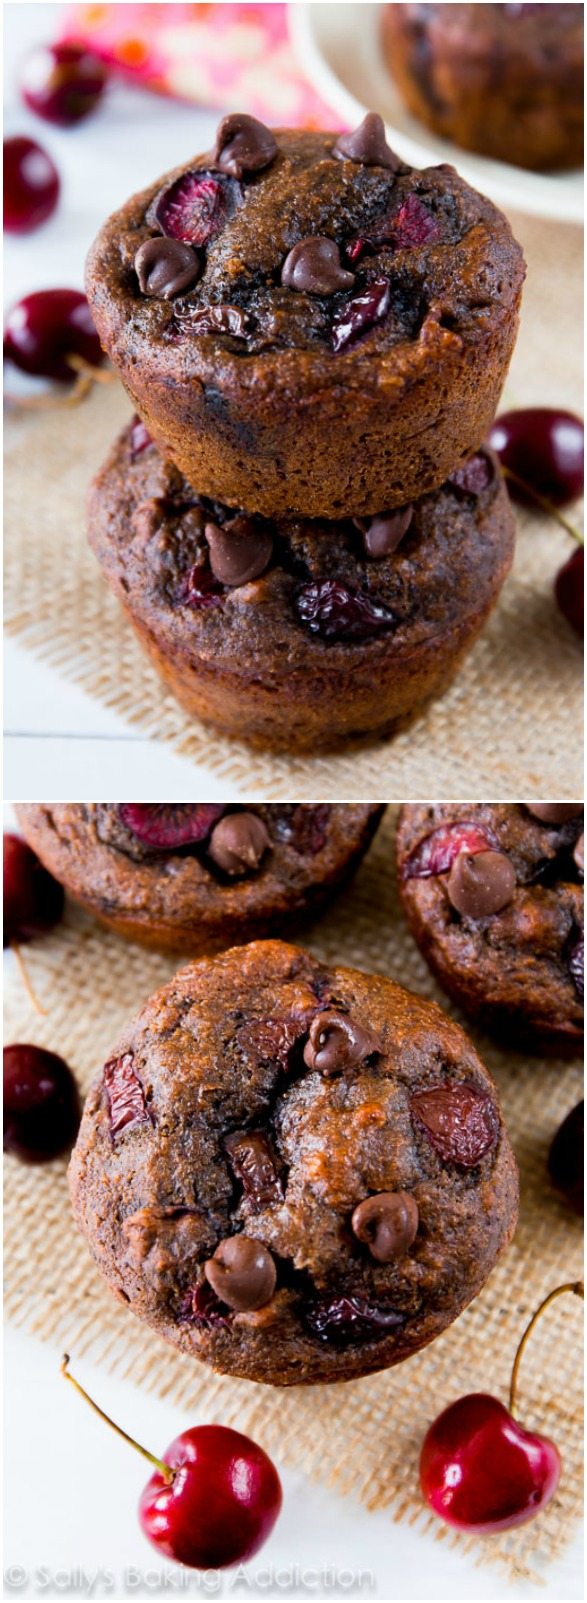 Prenez la recette facile de ces muffins au chocolat à 110 calories sur sallysbakingaddiction.com